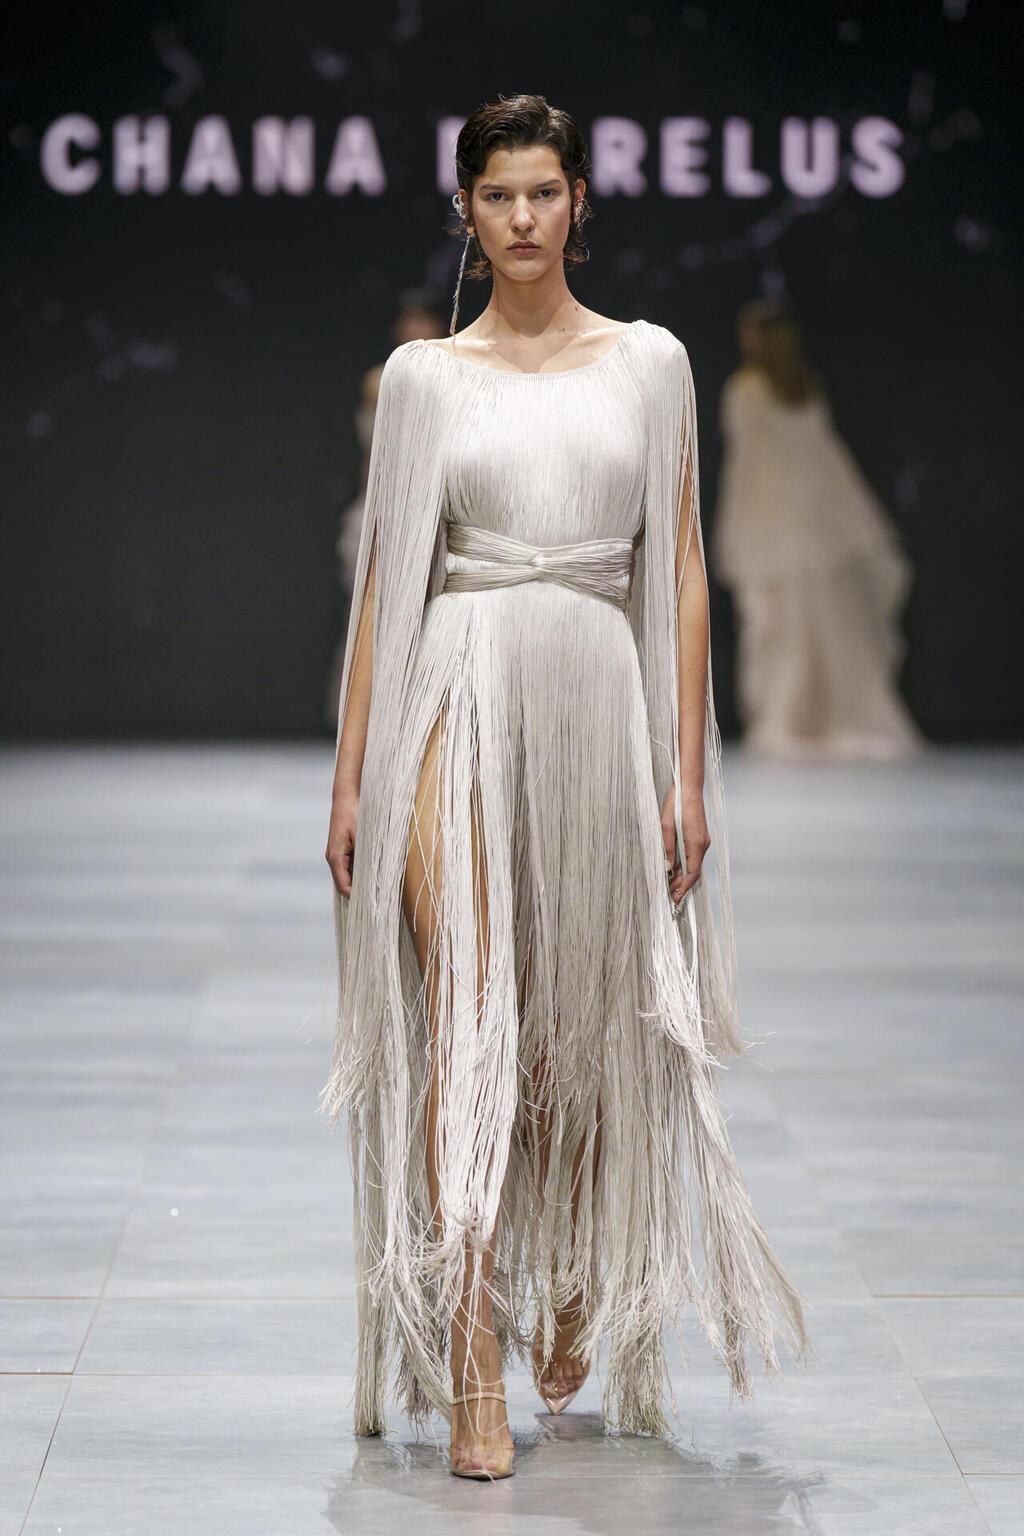 התצוגה של חנה מרילוס בשבוע האופנה קורנית תל אביב 2023